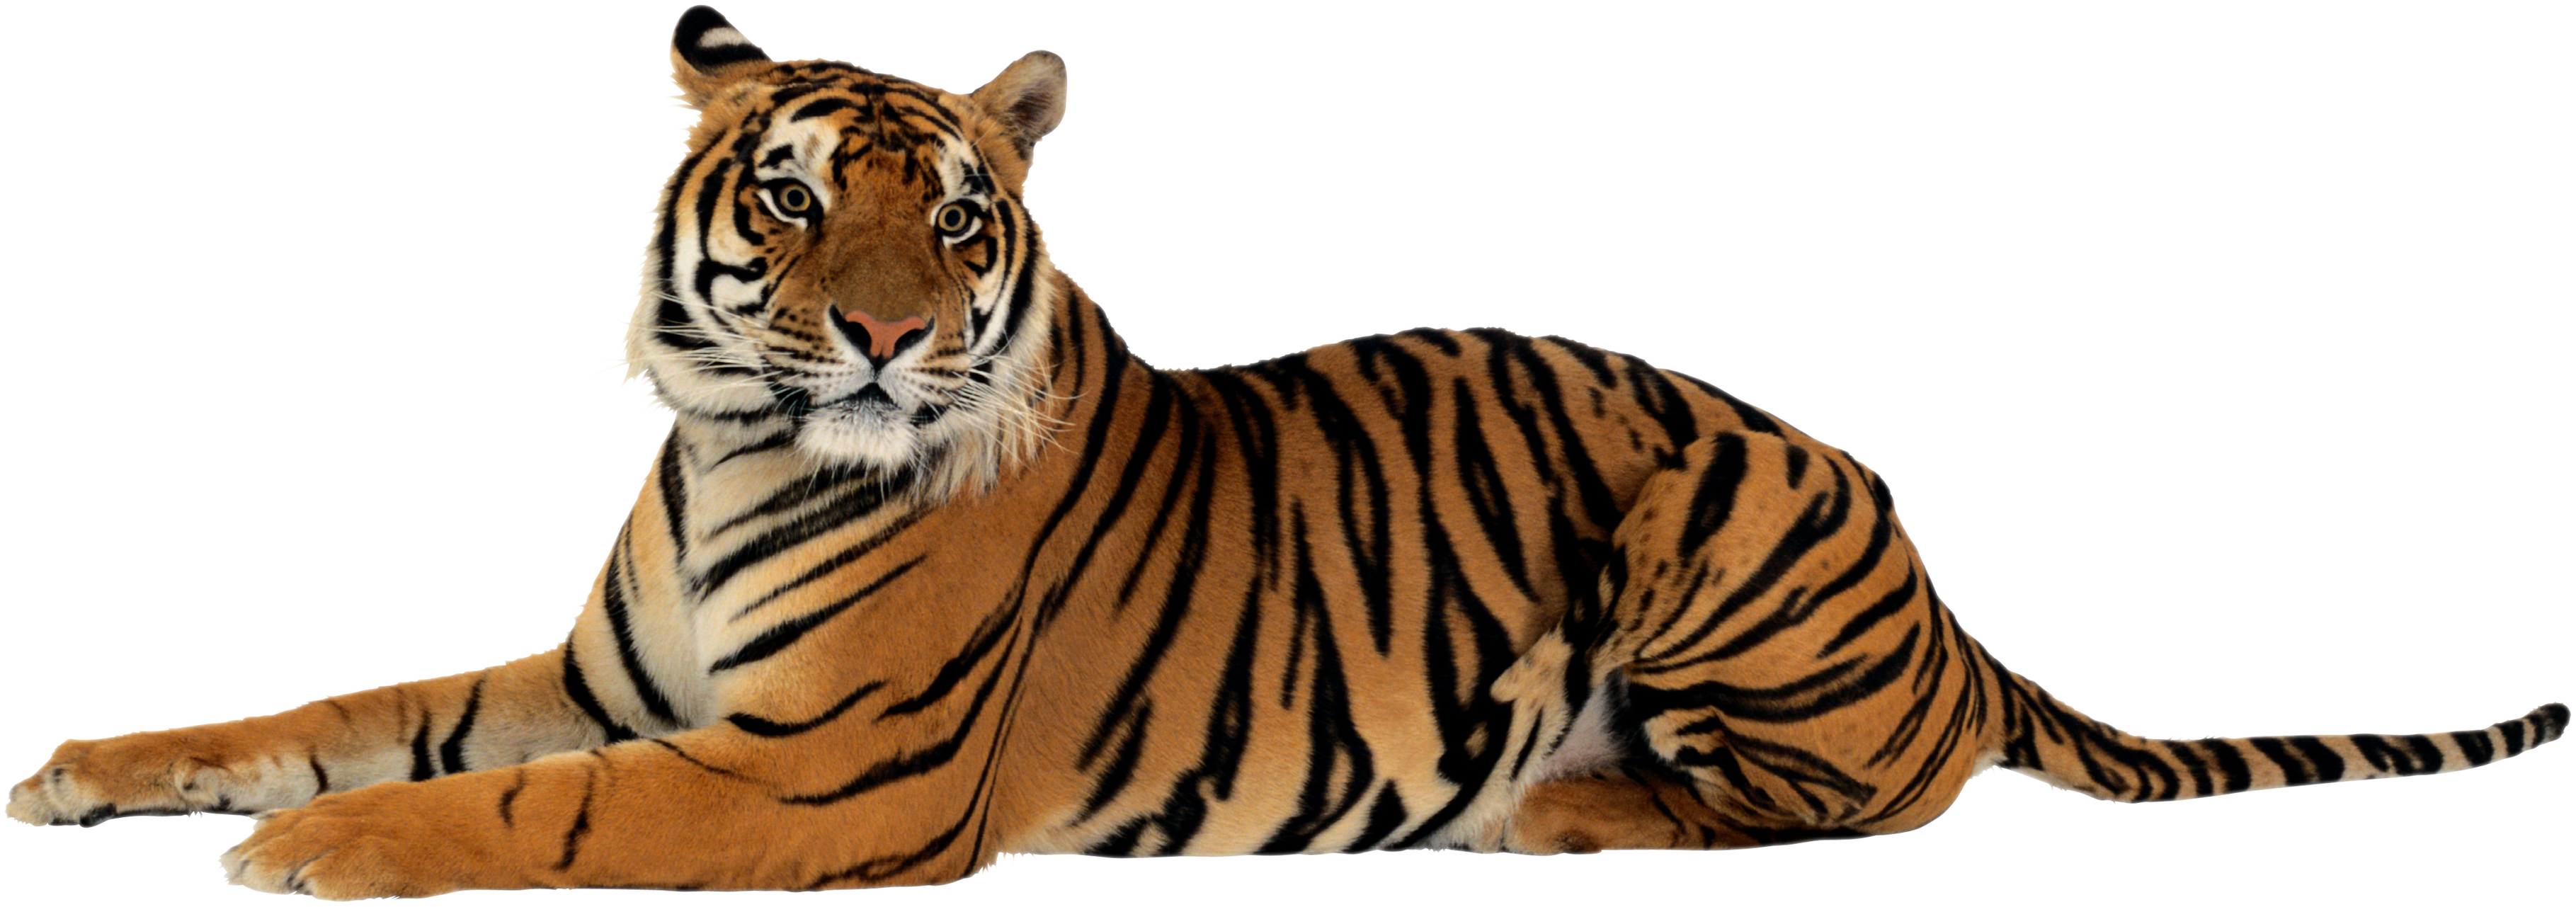 Transparent Tiger Clip Art